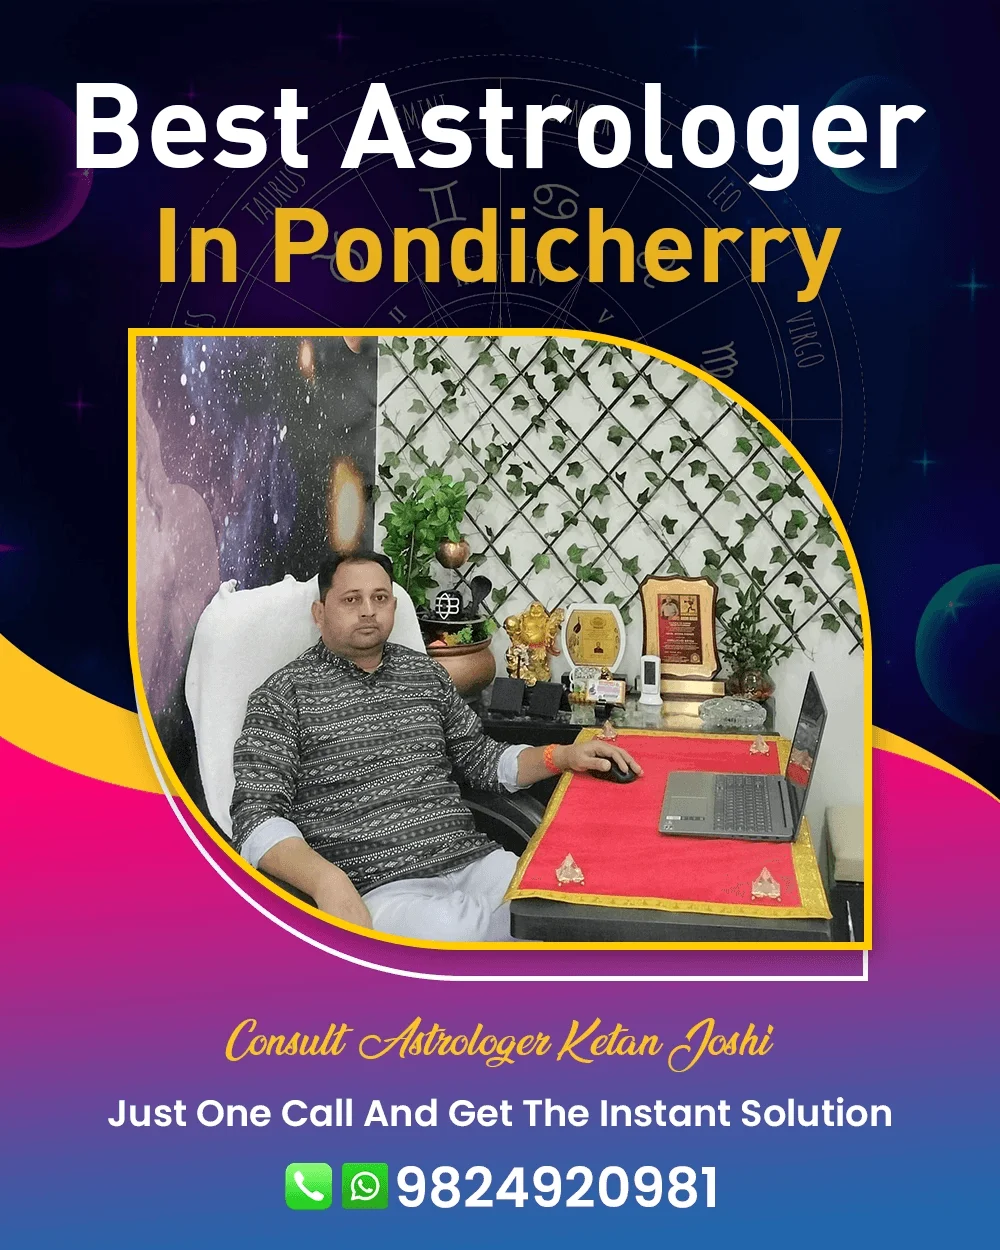 Best Astrologer In Pondicherry